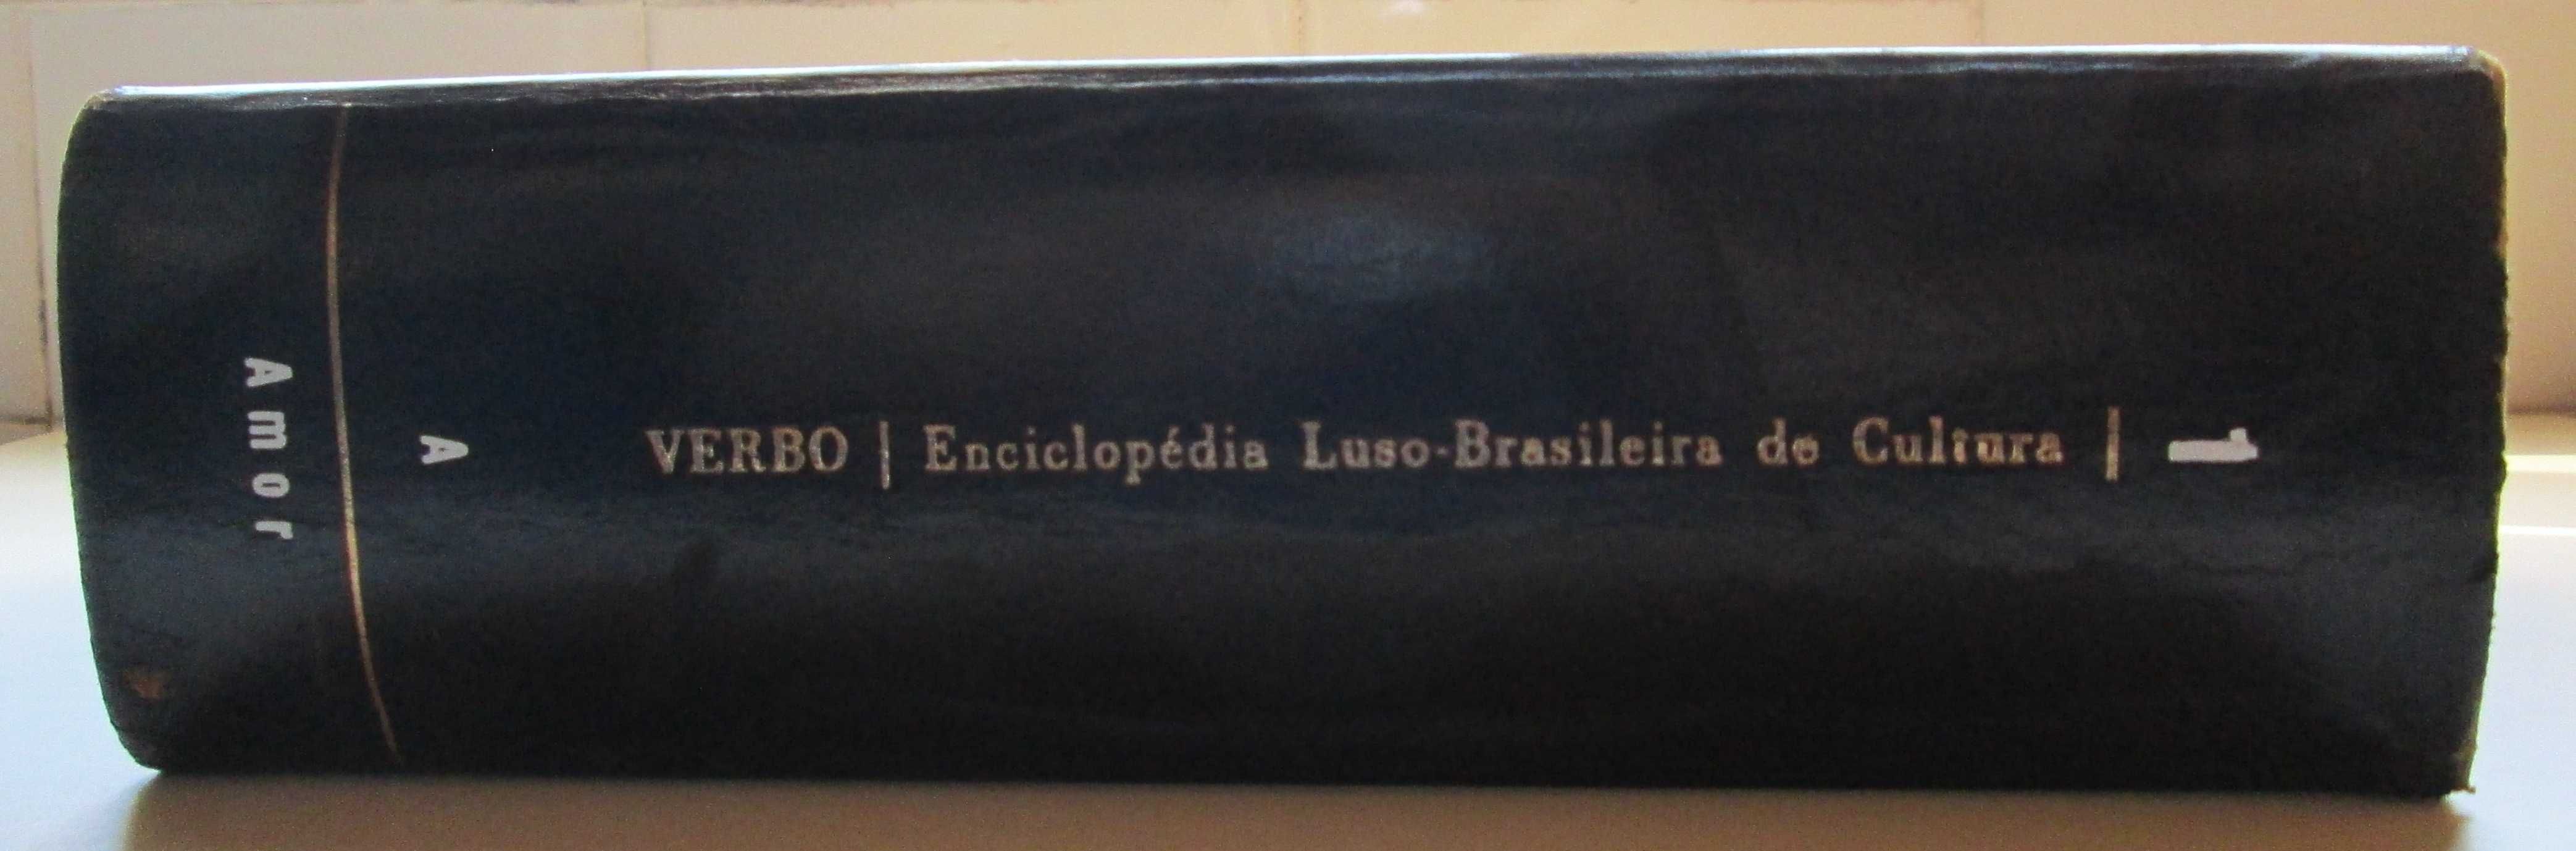 Enciclopédia Luso-Brasileira de Cultura